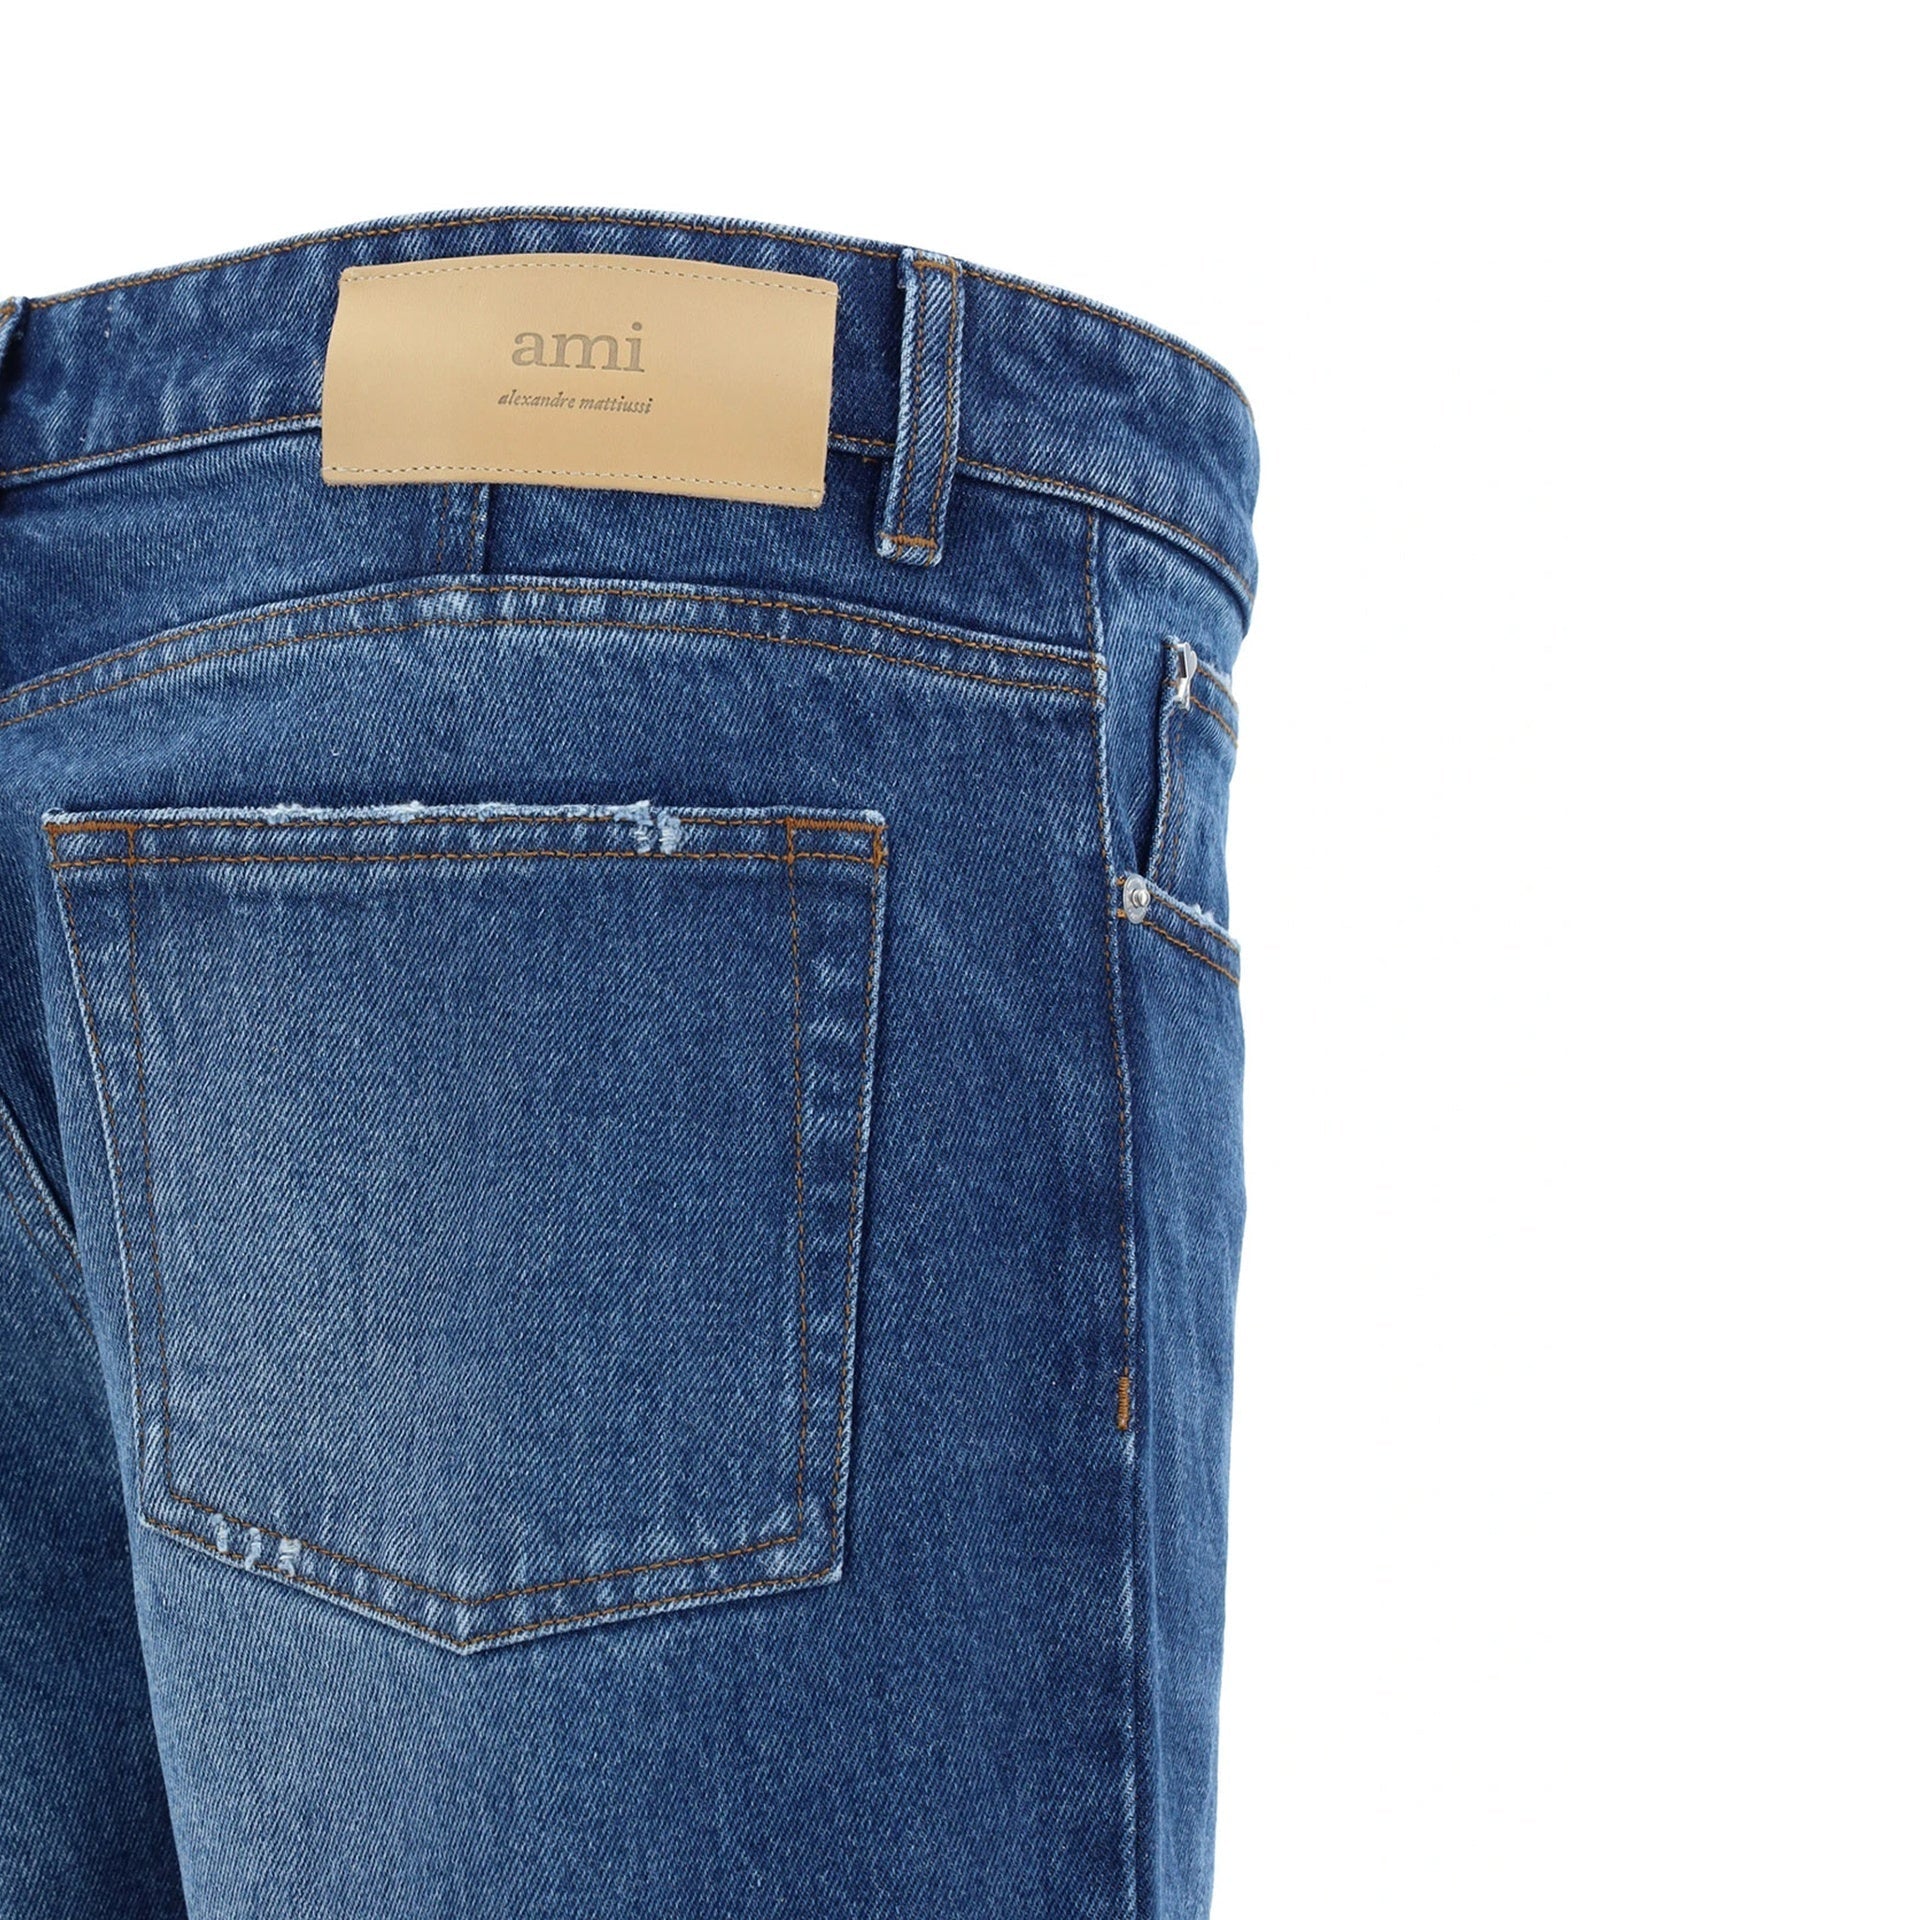 AMI-PARIS-OUTLET-SALE-Ami-Paris-Classic-Fit-Jeans-Hosen-ARCHIVE-COLLECTION-3.jpg